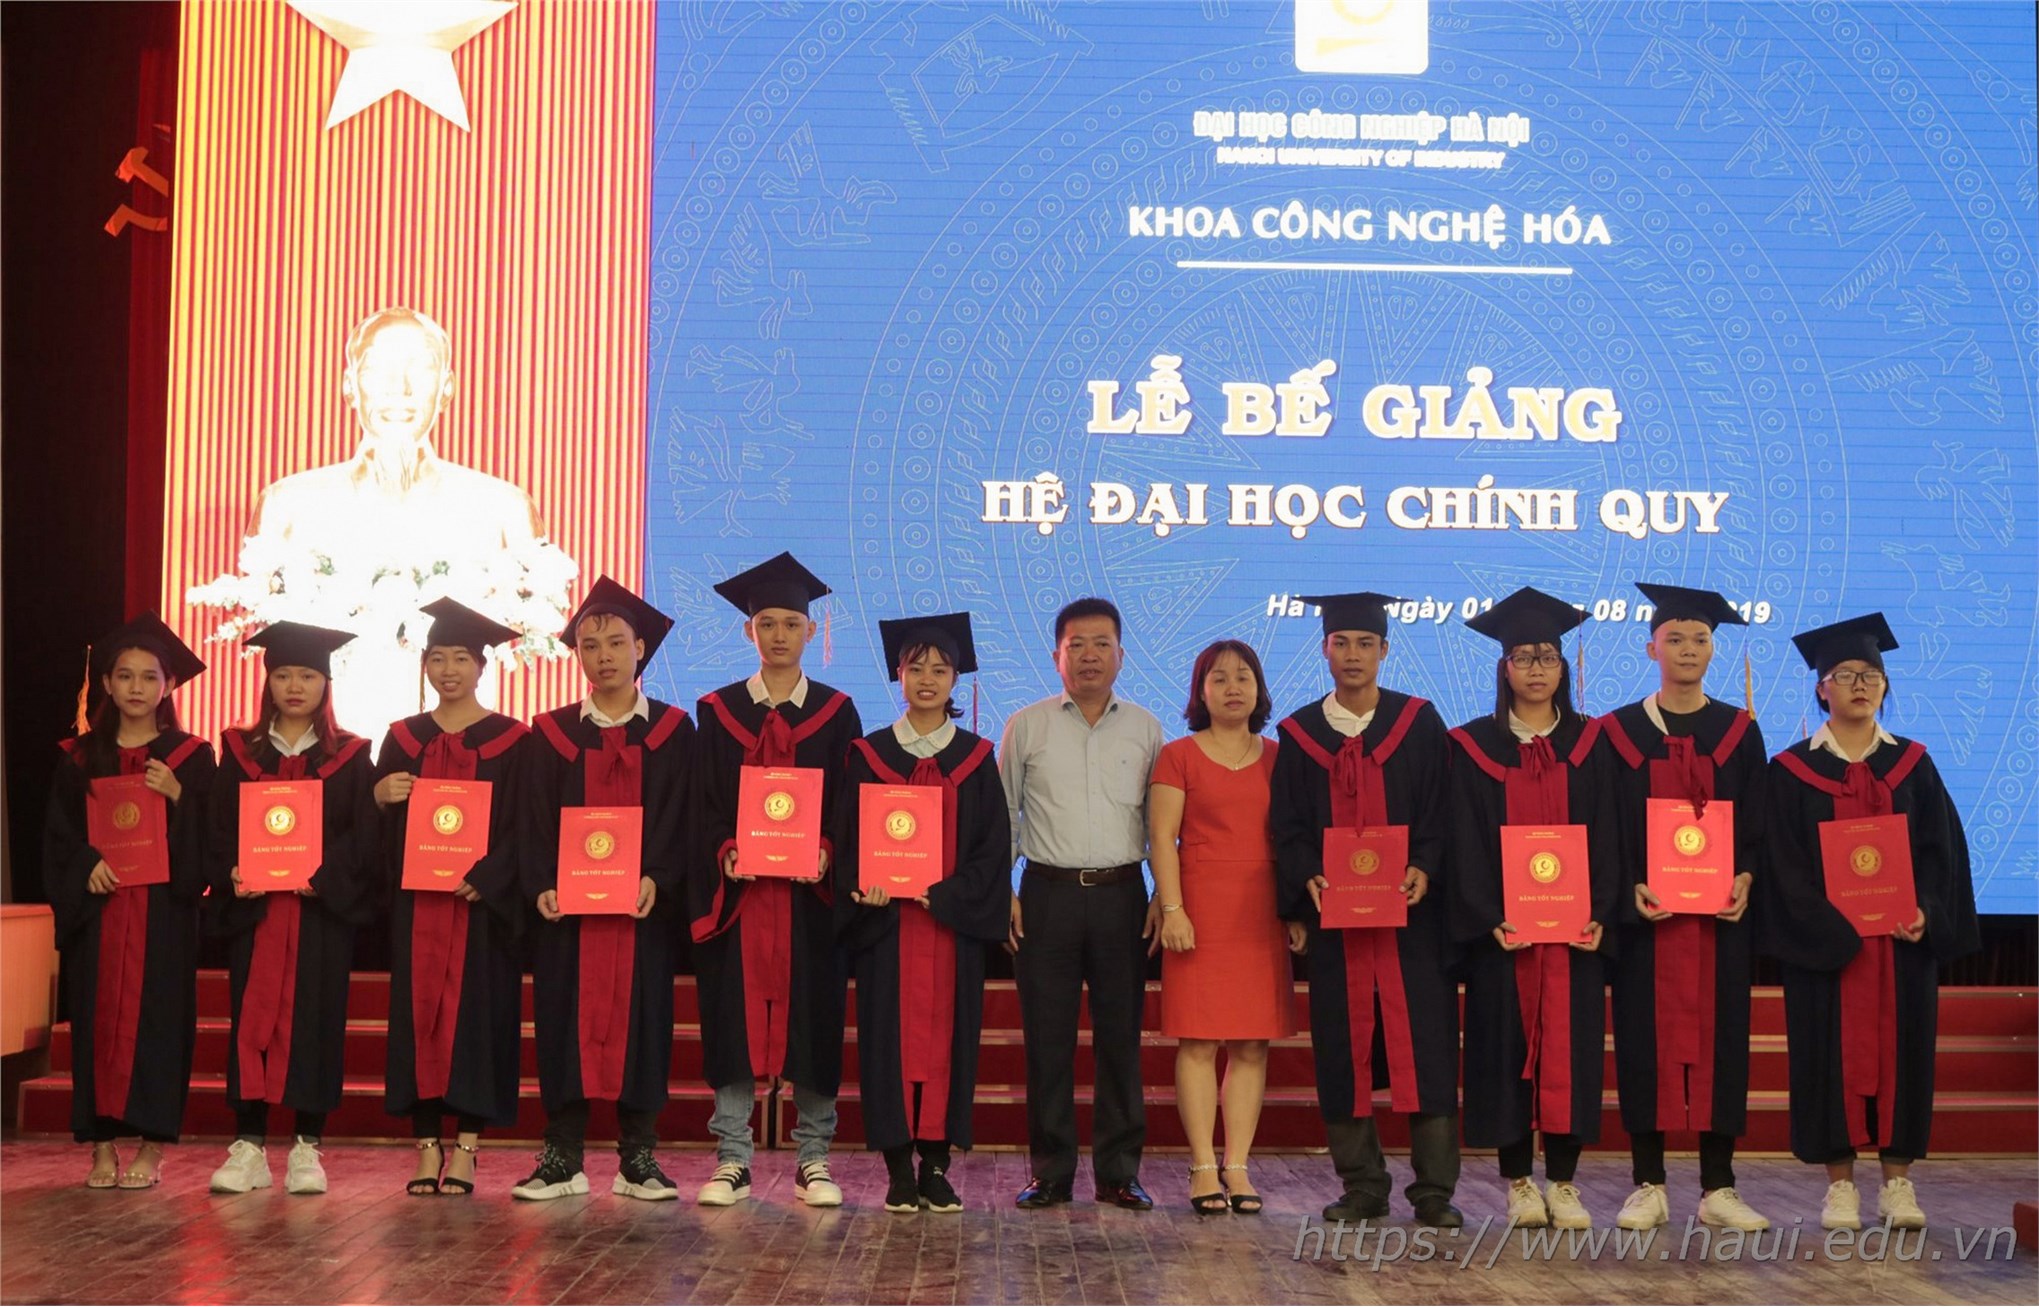 Lễ Bế giảng và trao bằng tốt nghiệp cử nhân trường Đại học Công nghiệp Hà Nội